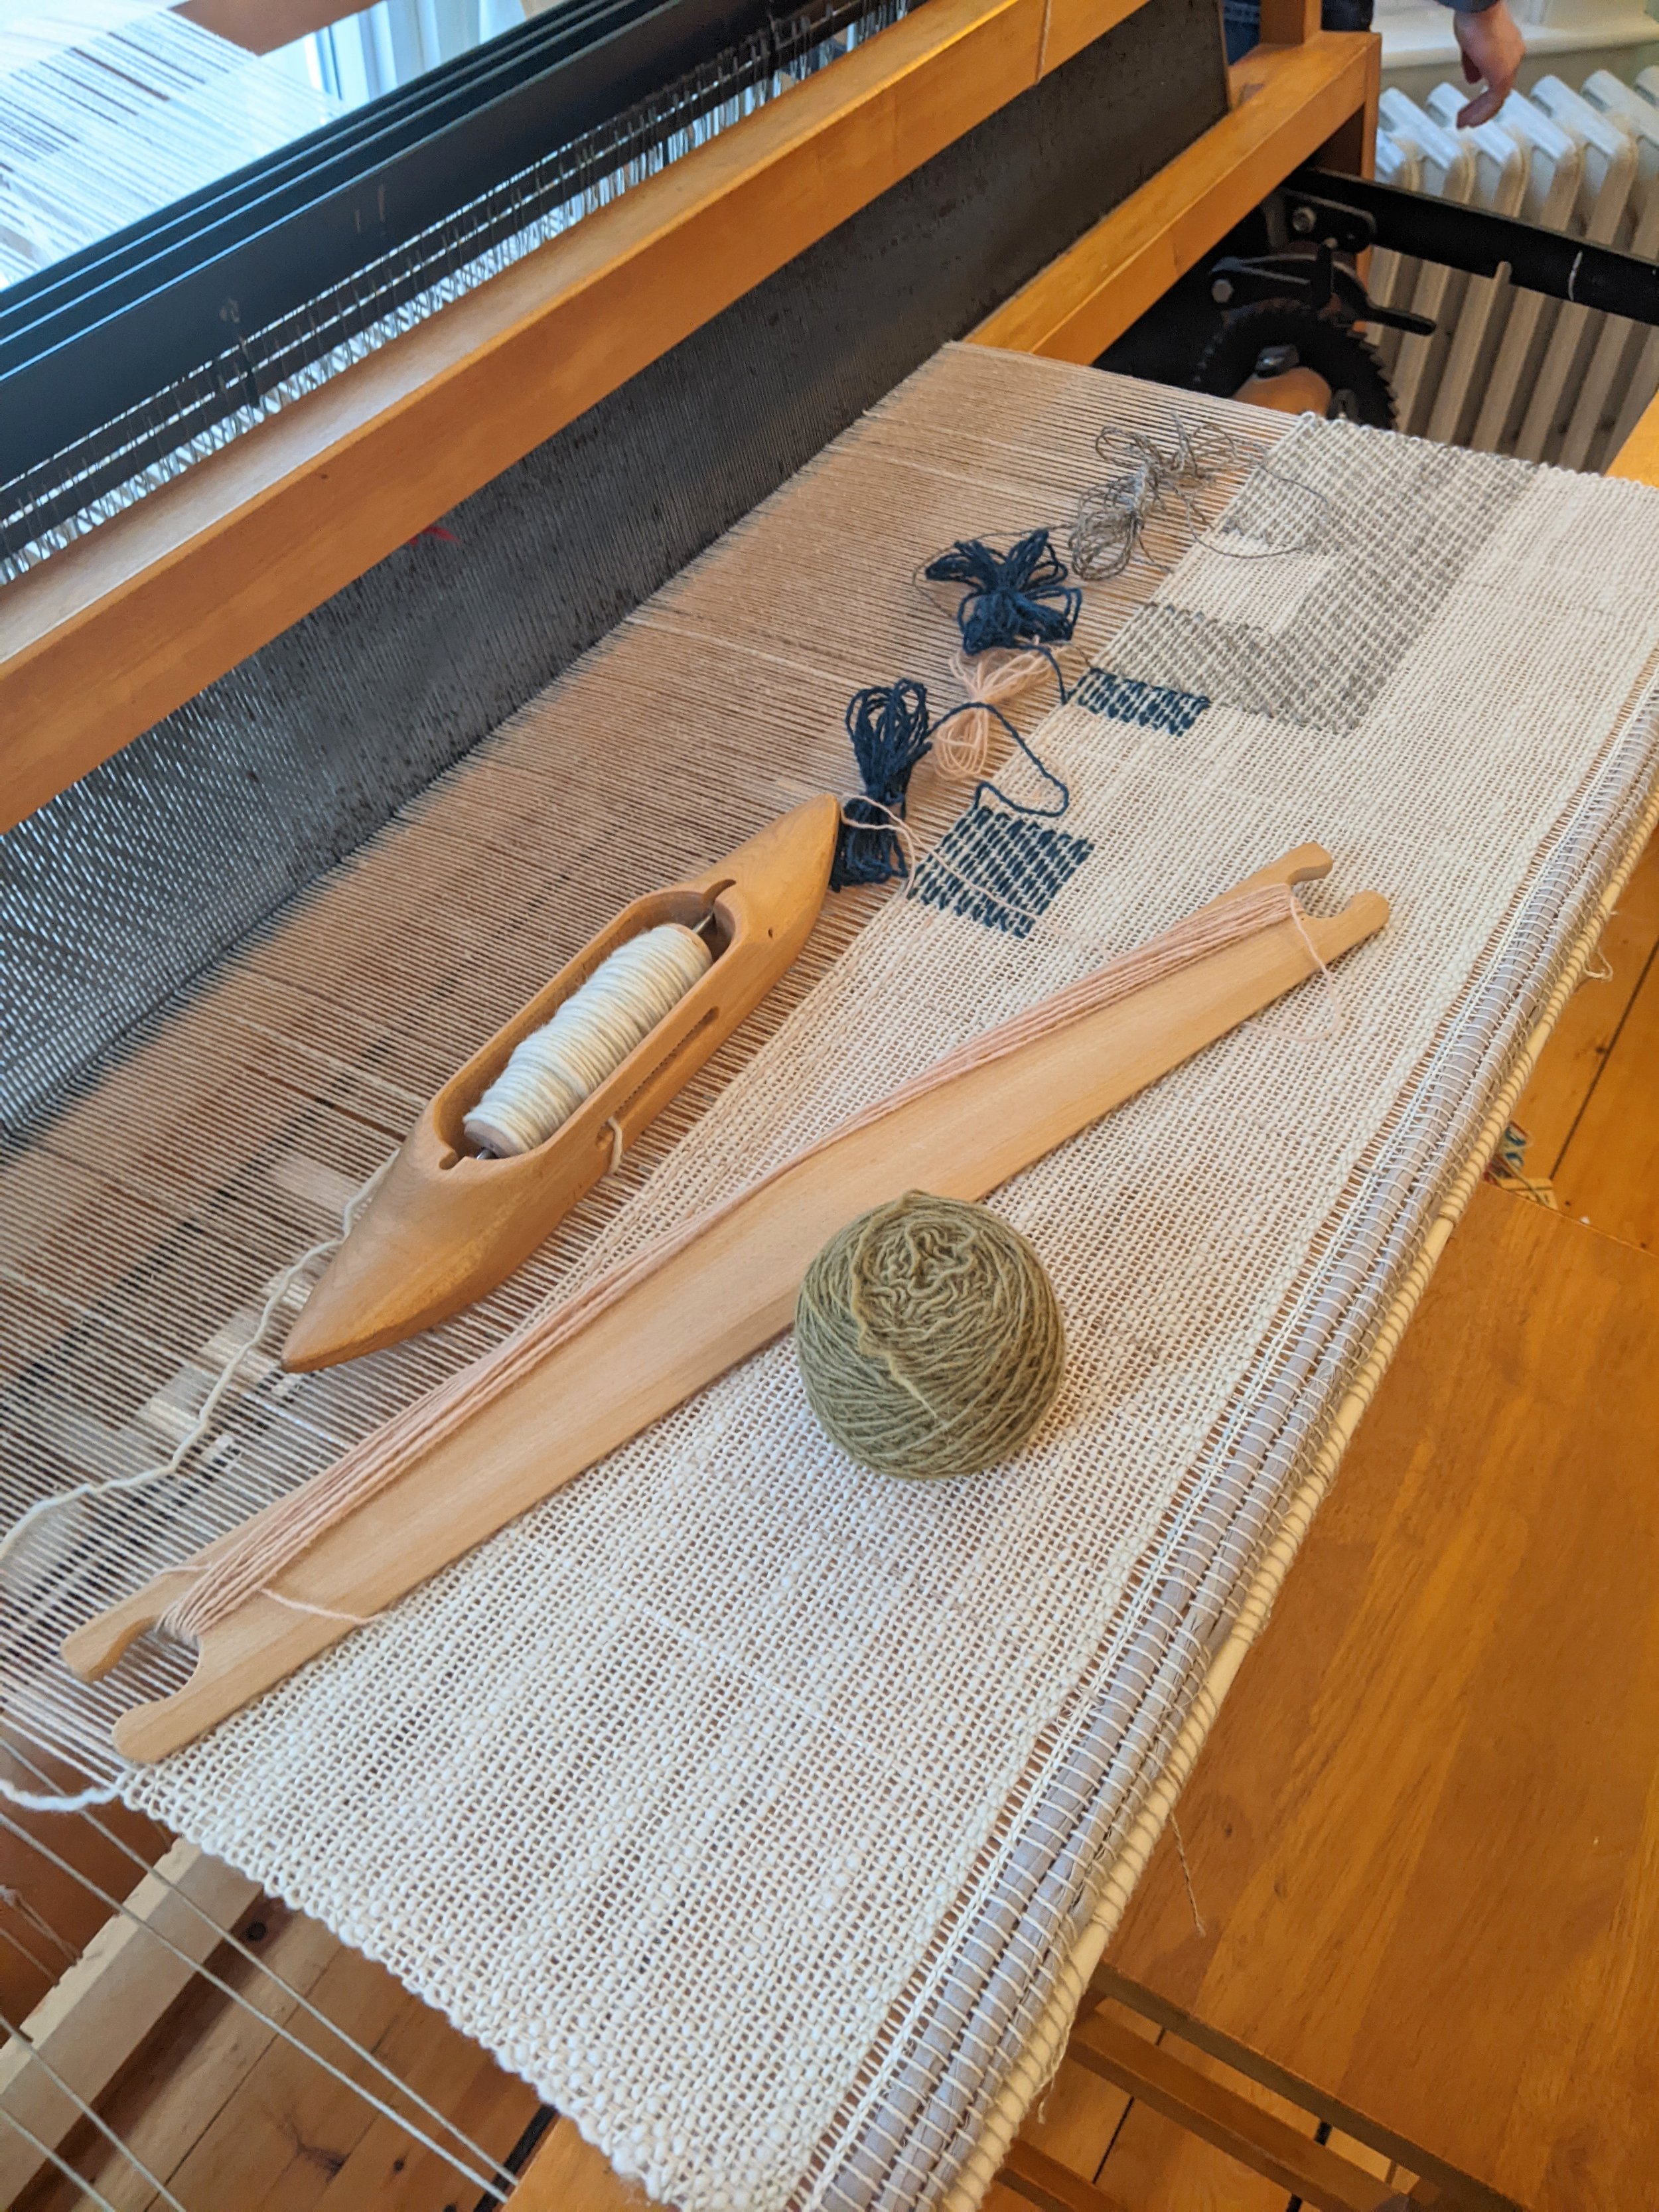 yarn samples on home blanket.jpg